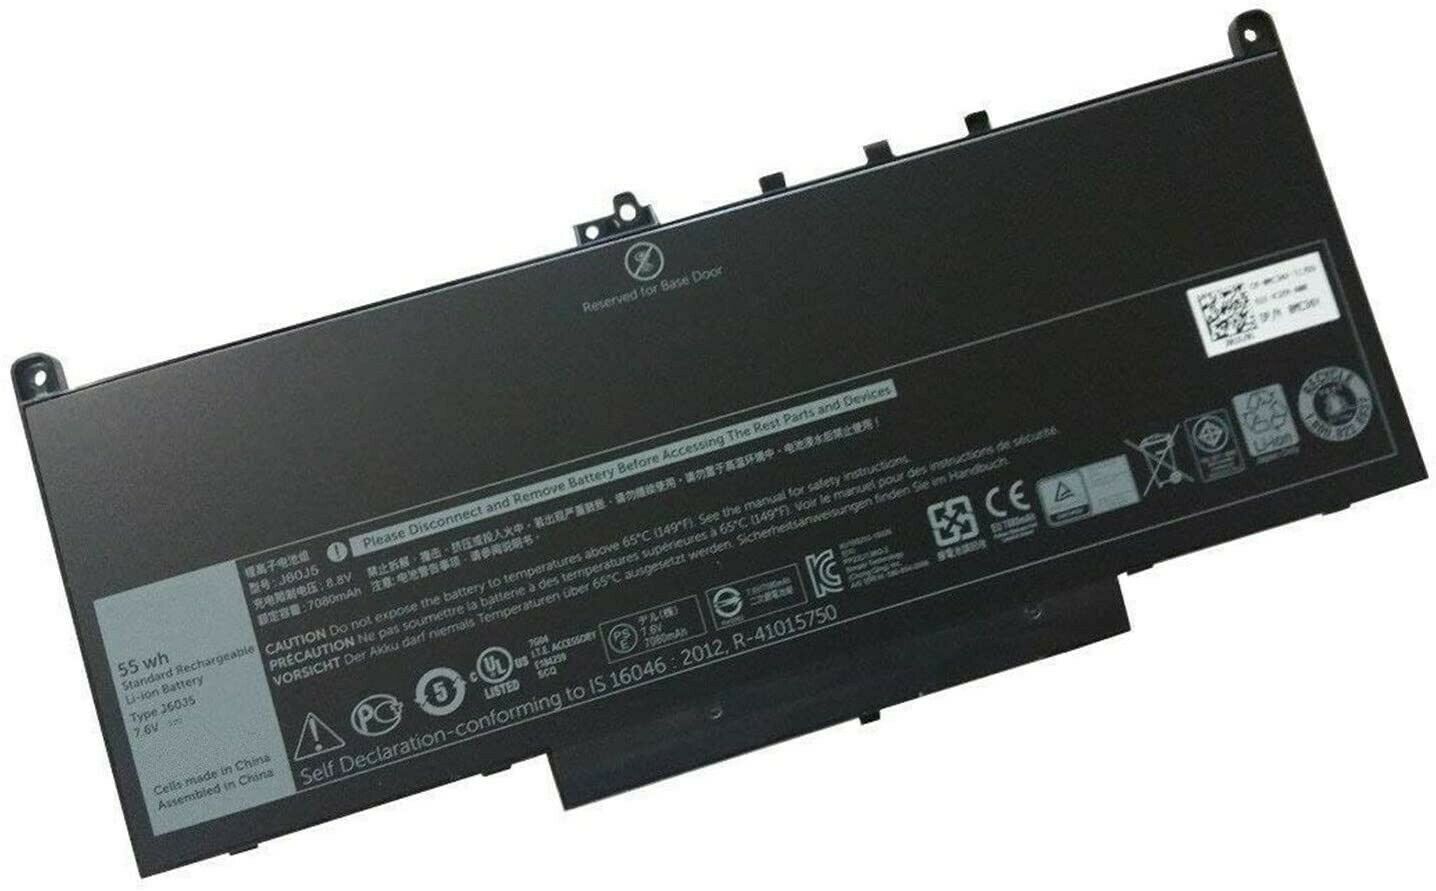 Bateria para Dell Latitude E7270,E7470 0MC34Y 242WD J60J5 MC34Y – Clique na imagem para fechar